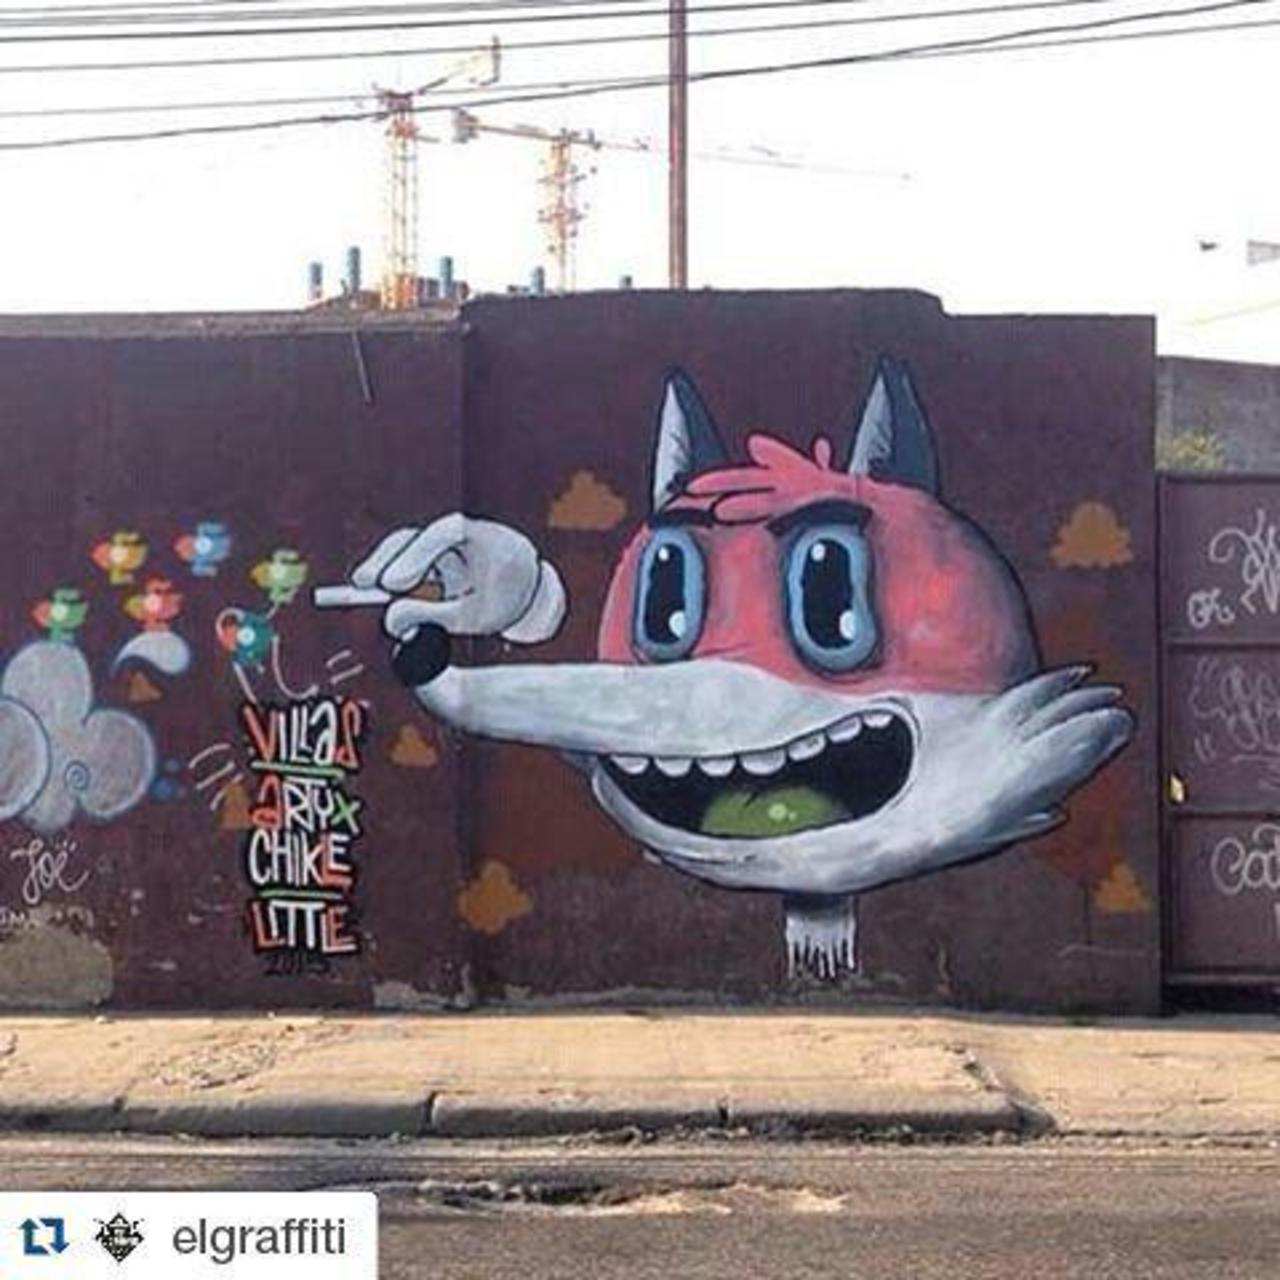 RT @artpushr: via #droidetv "http://bit.ly/1LqyvKr" #graffiti #streetart http://t.co/038eg2dmg0